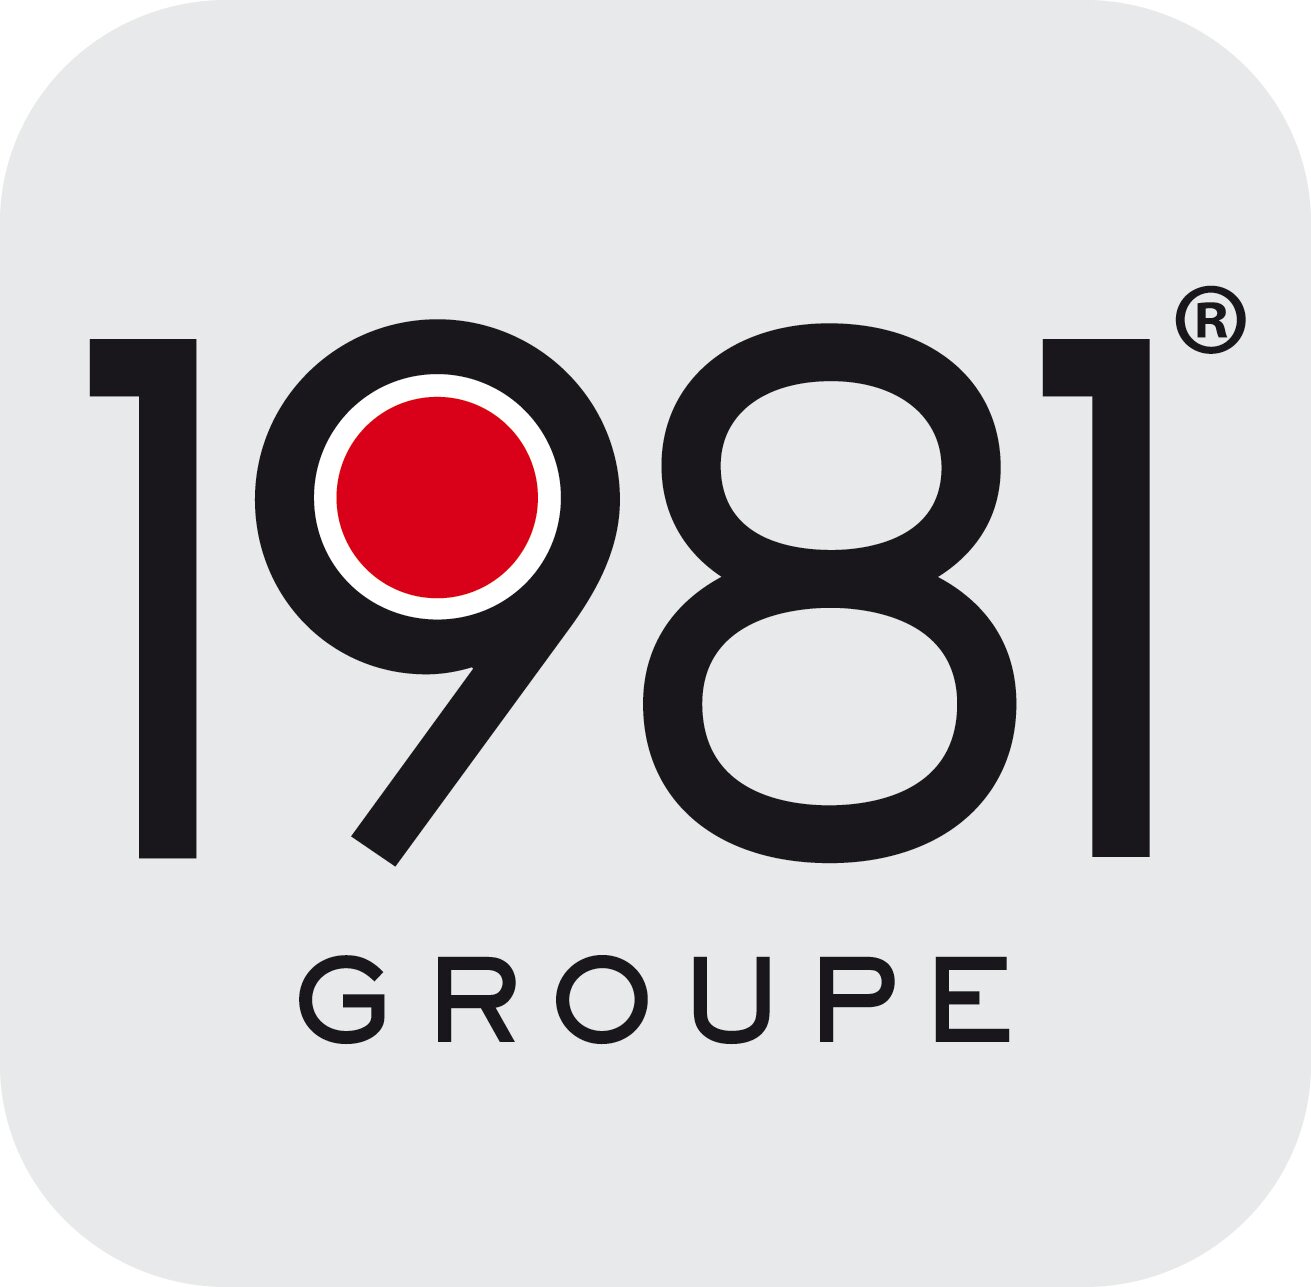 Le Groupe 1981 développe 7 stations : Ado FM, BlackBox, Forum, Latina, Wit FM, Vibration et Voltage